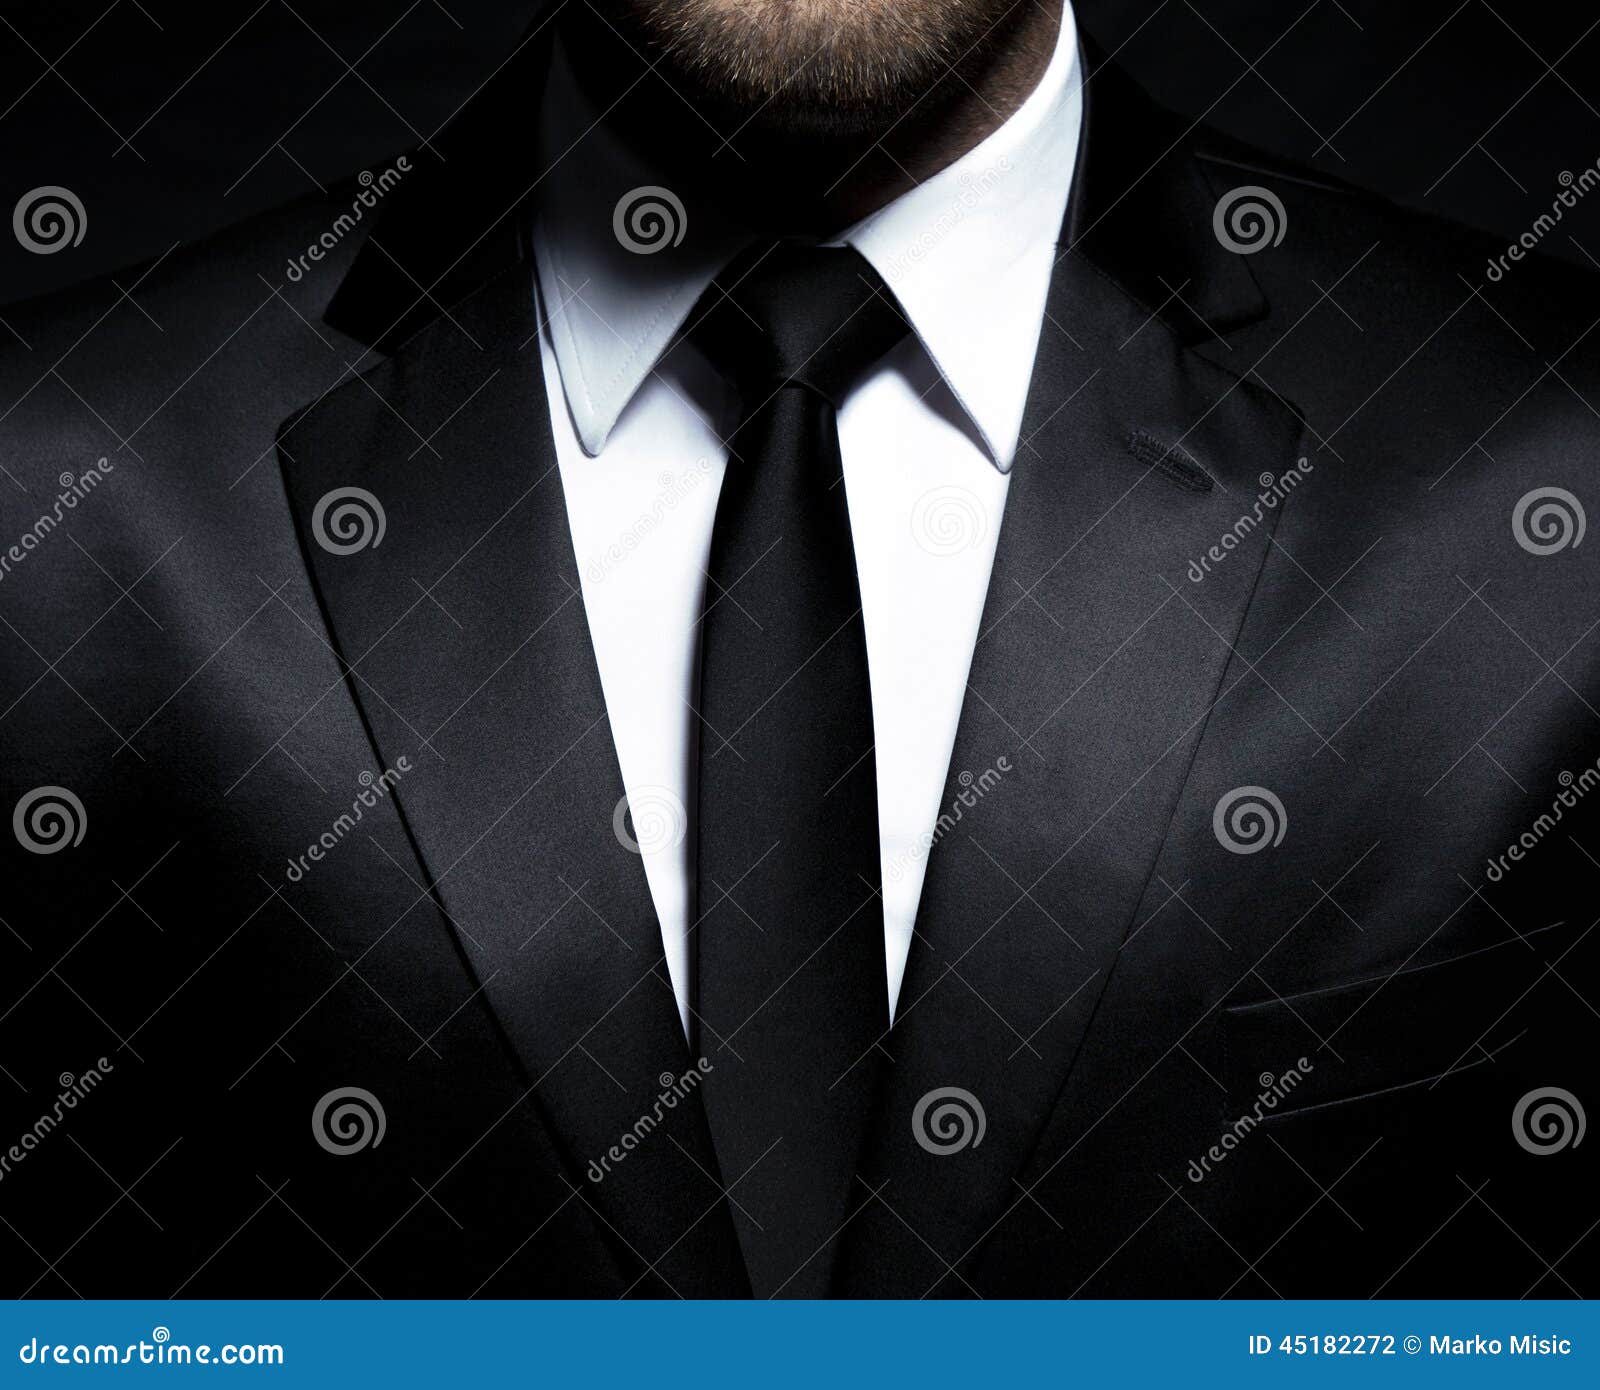 man gentleman in black suit and tie